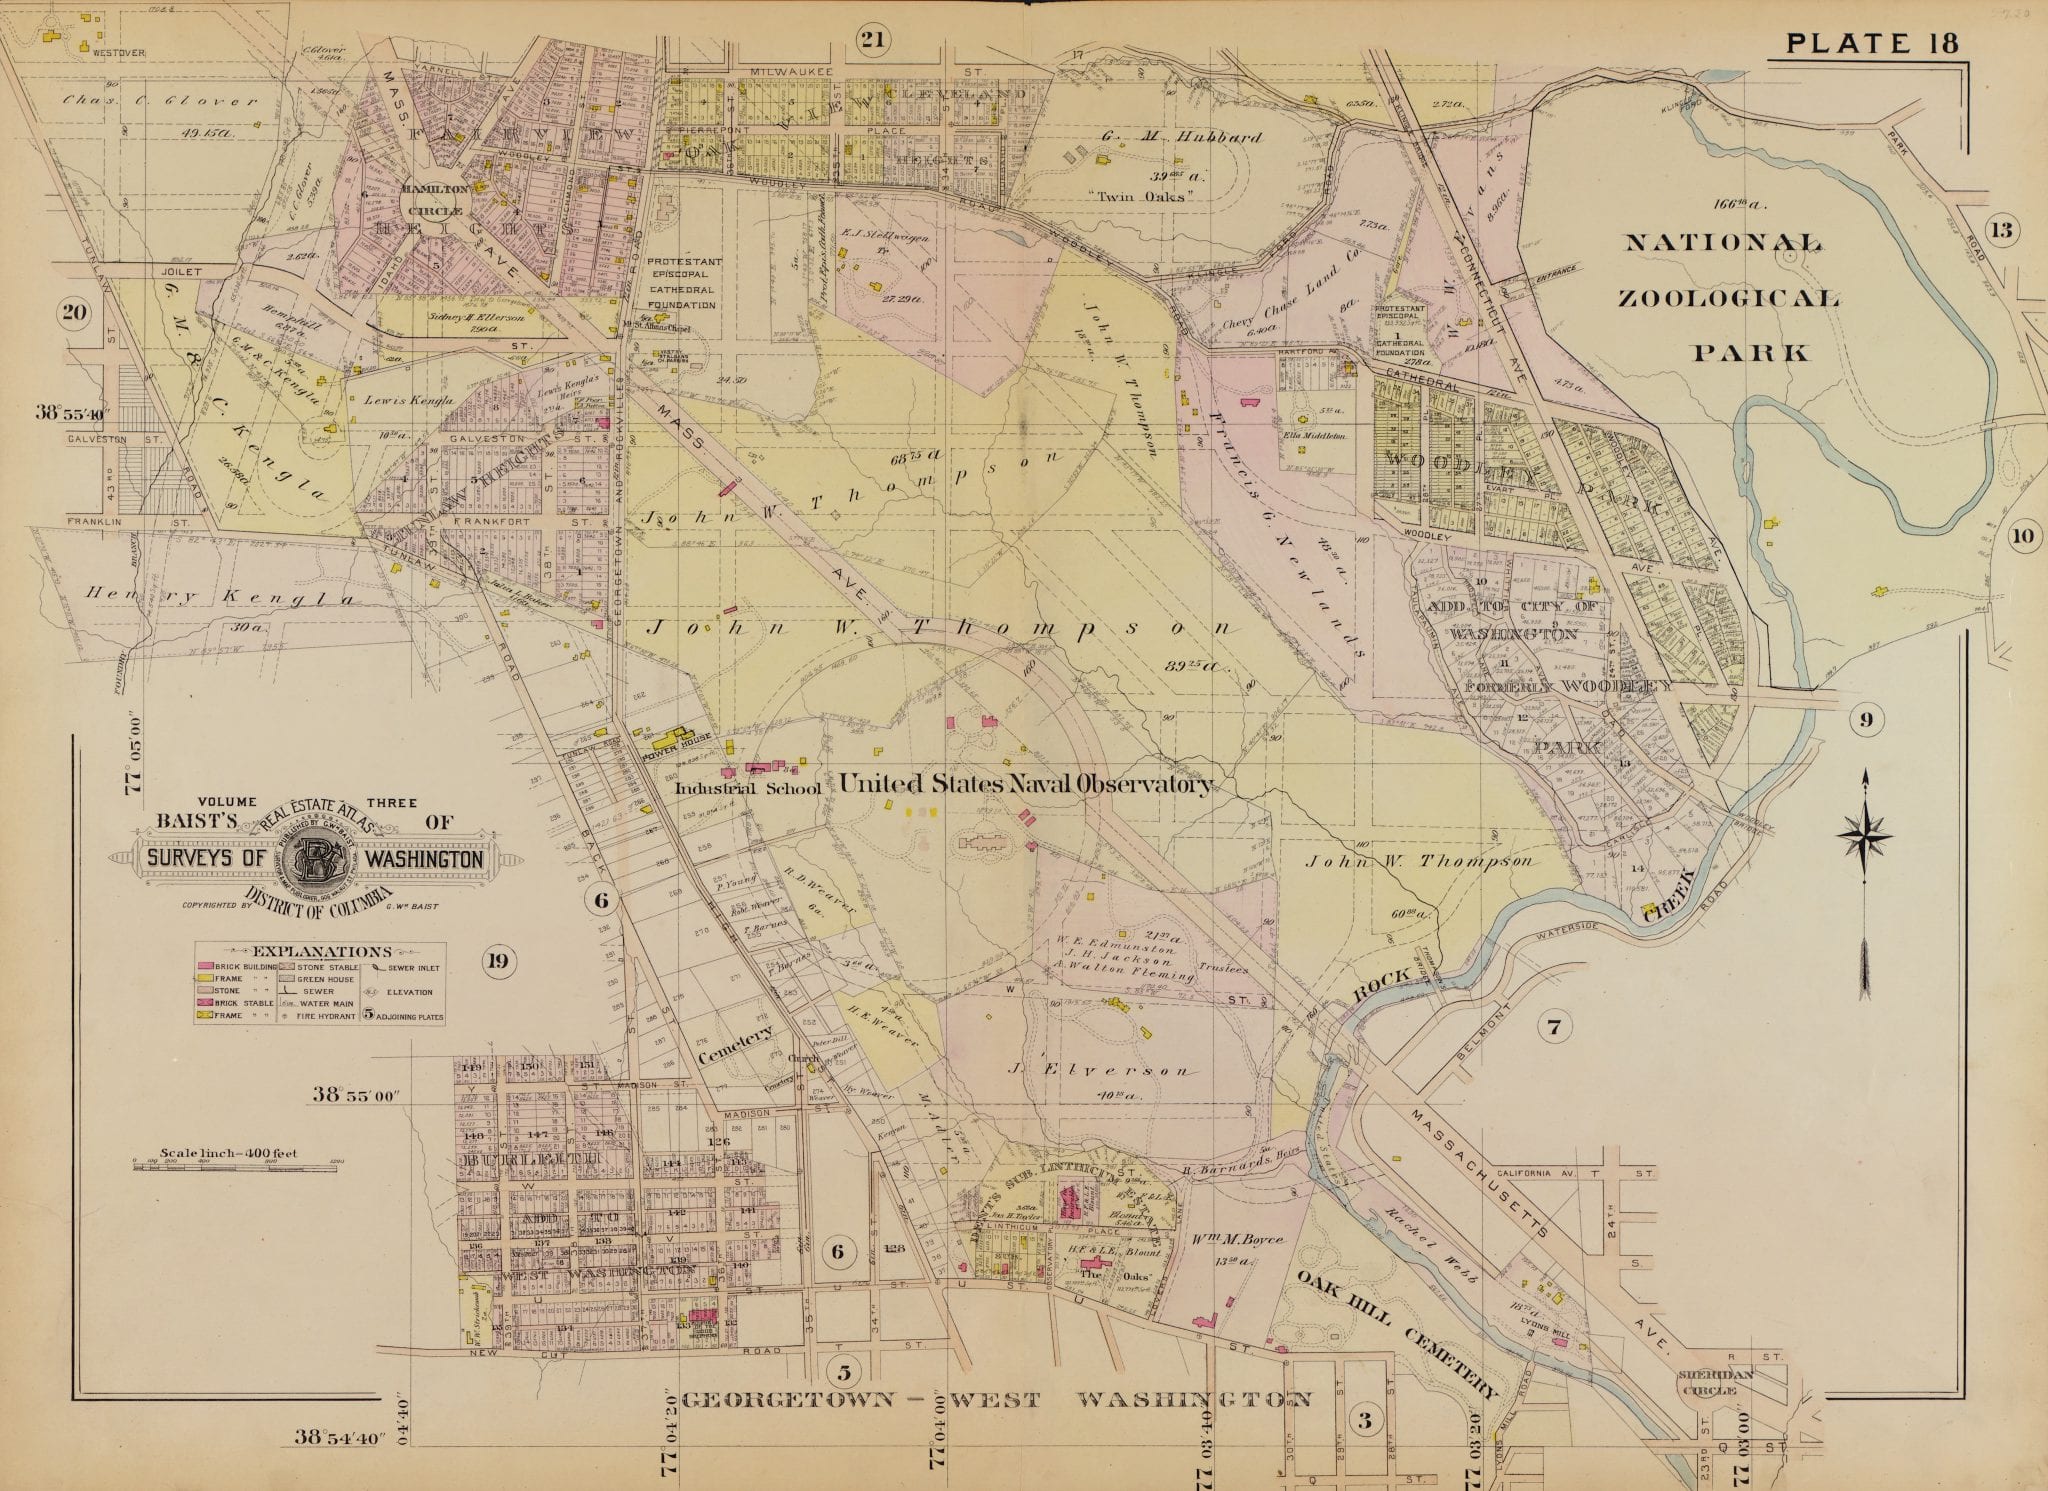 1903 map of Northwest D.C.